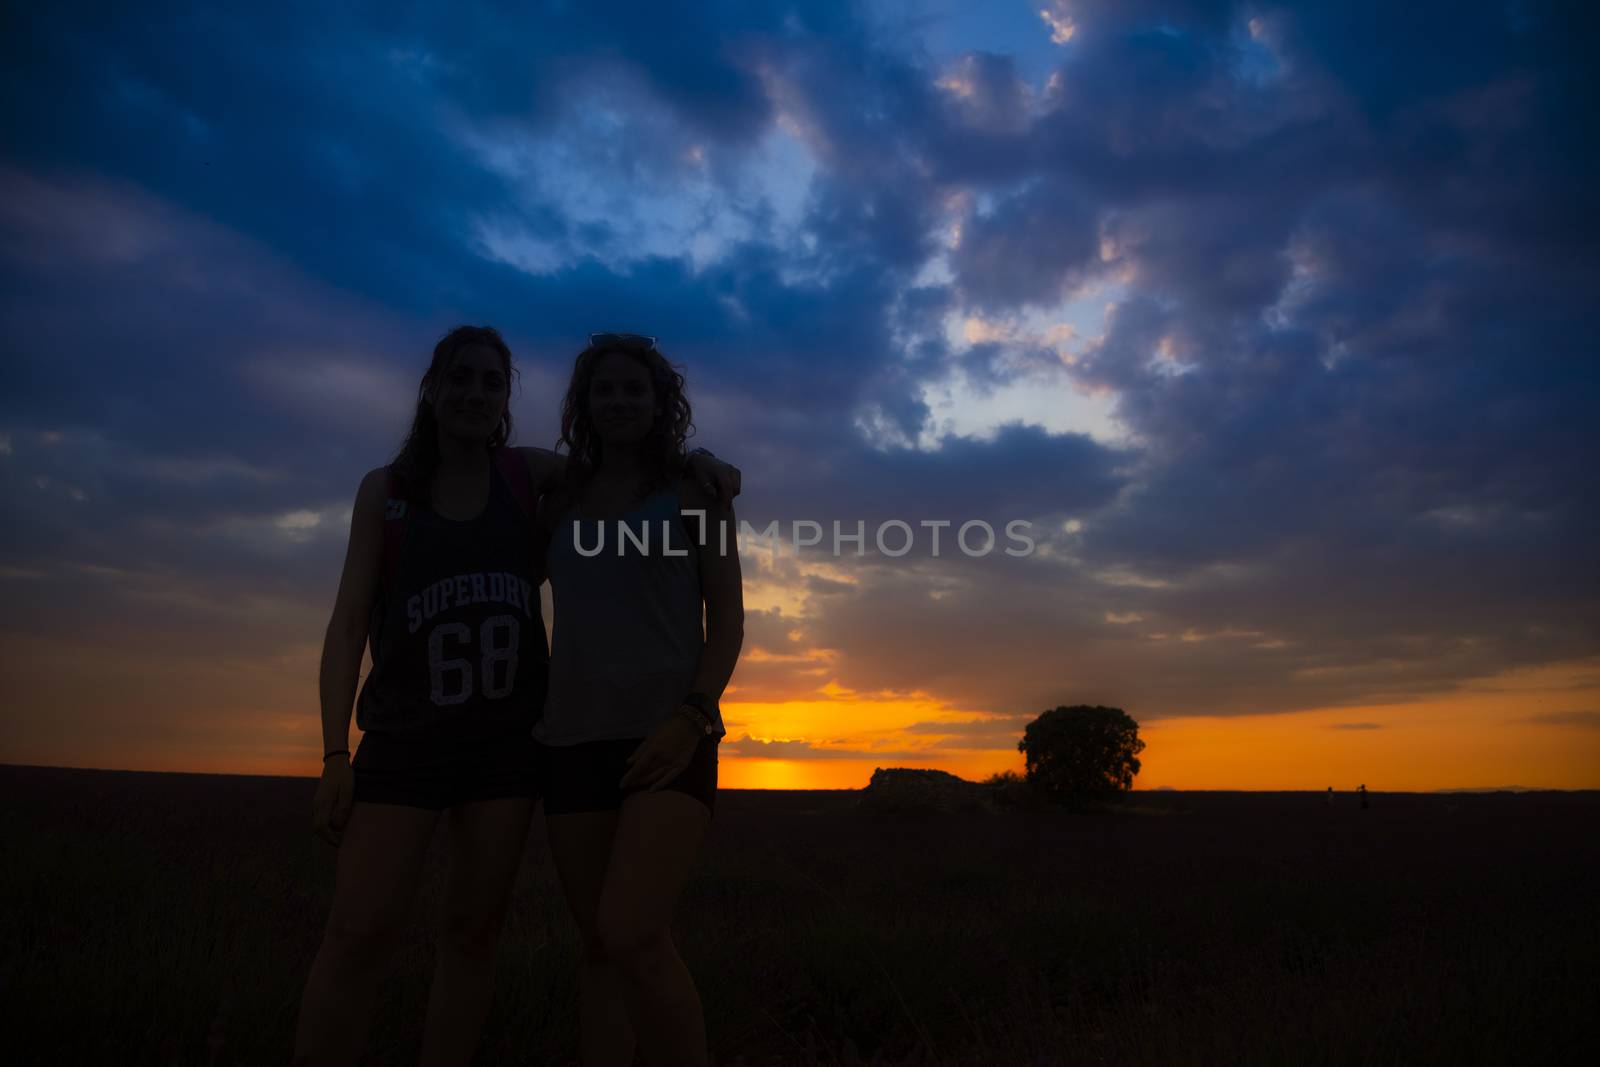 Two friends in a lavender field in July.